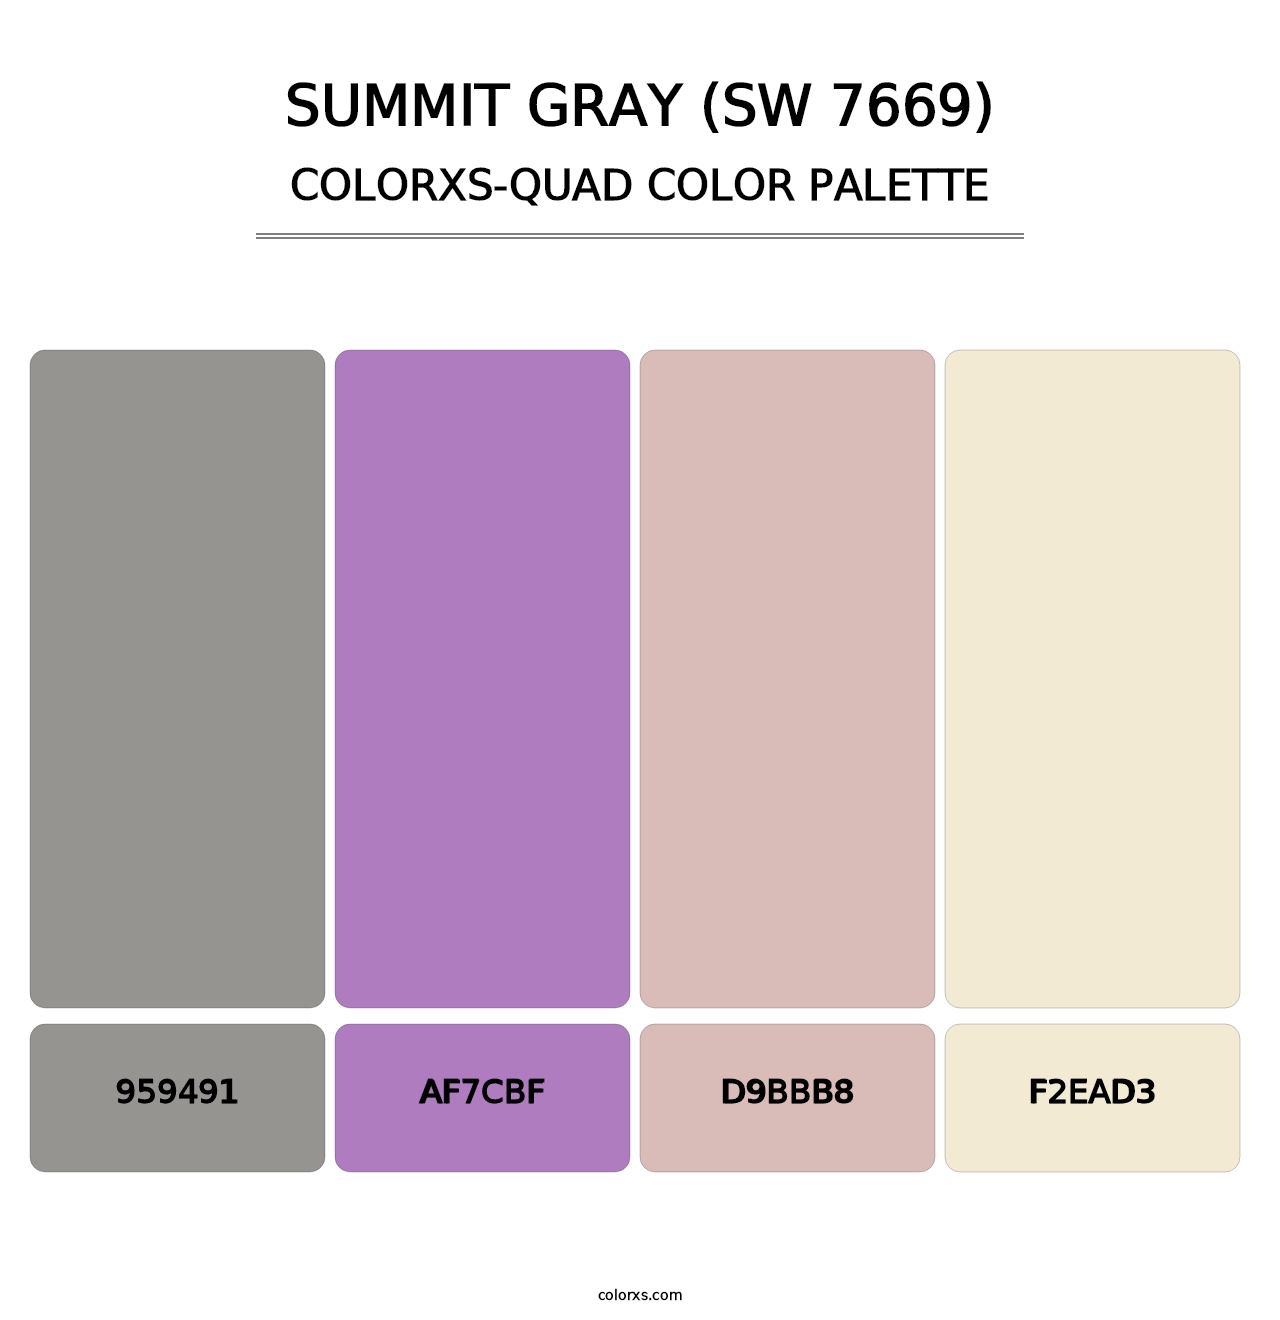 Summit Gray (SW 7669) - Colorxs Quad Palette